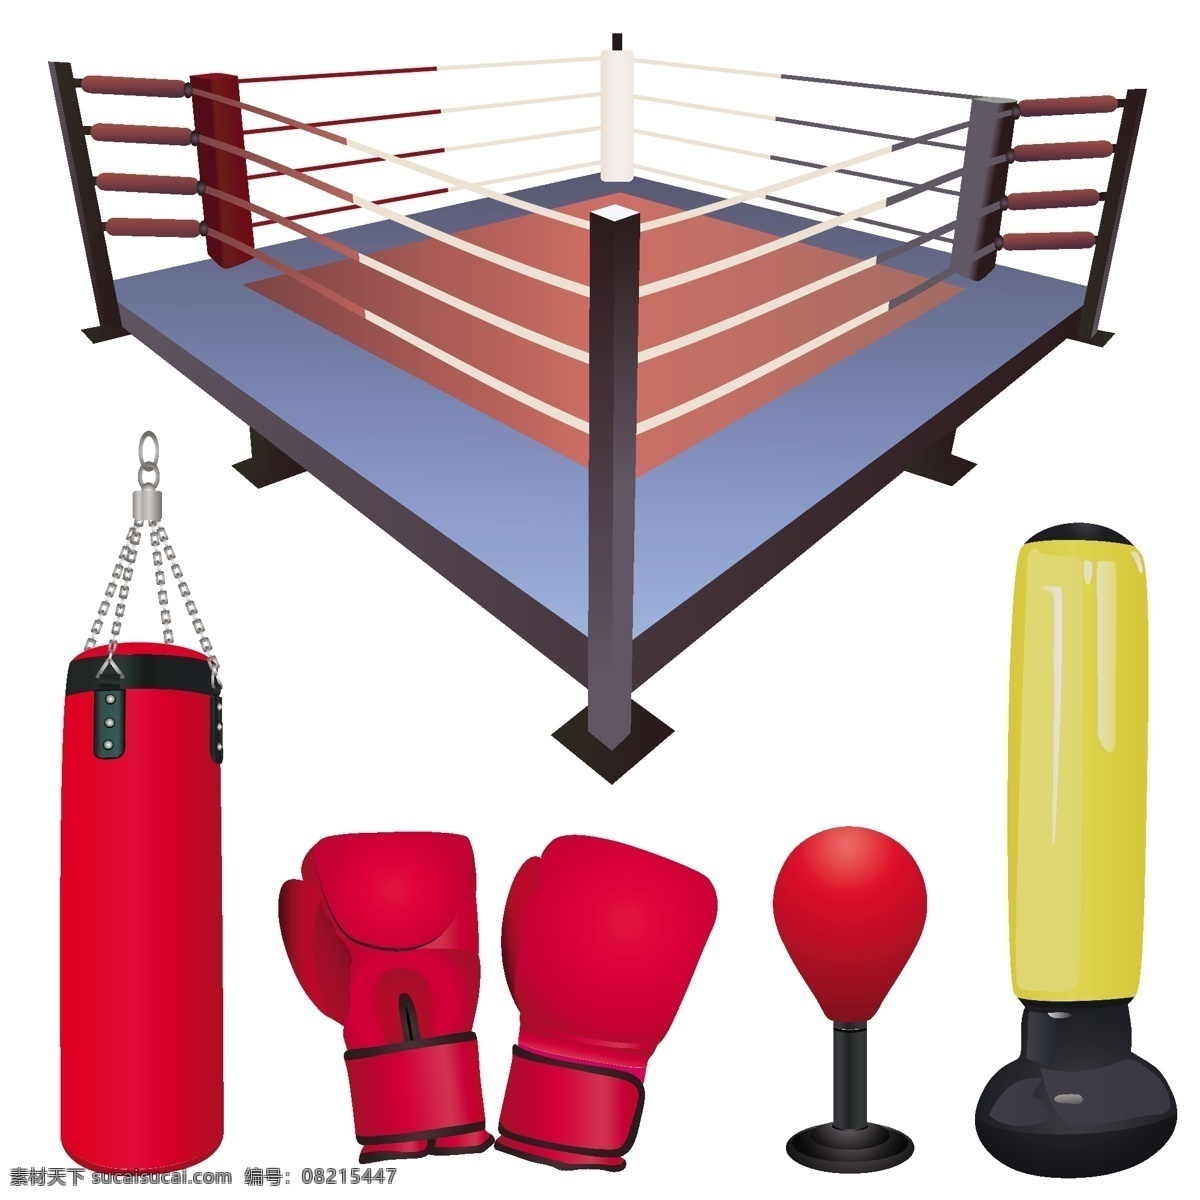 拳击 主题 矢量 拳台 沙包 手套 练拳 锻炼 用具 矢量素材 其他矢量